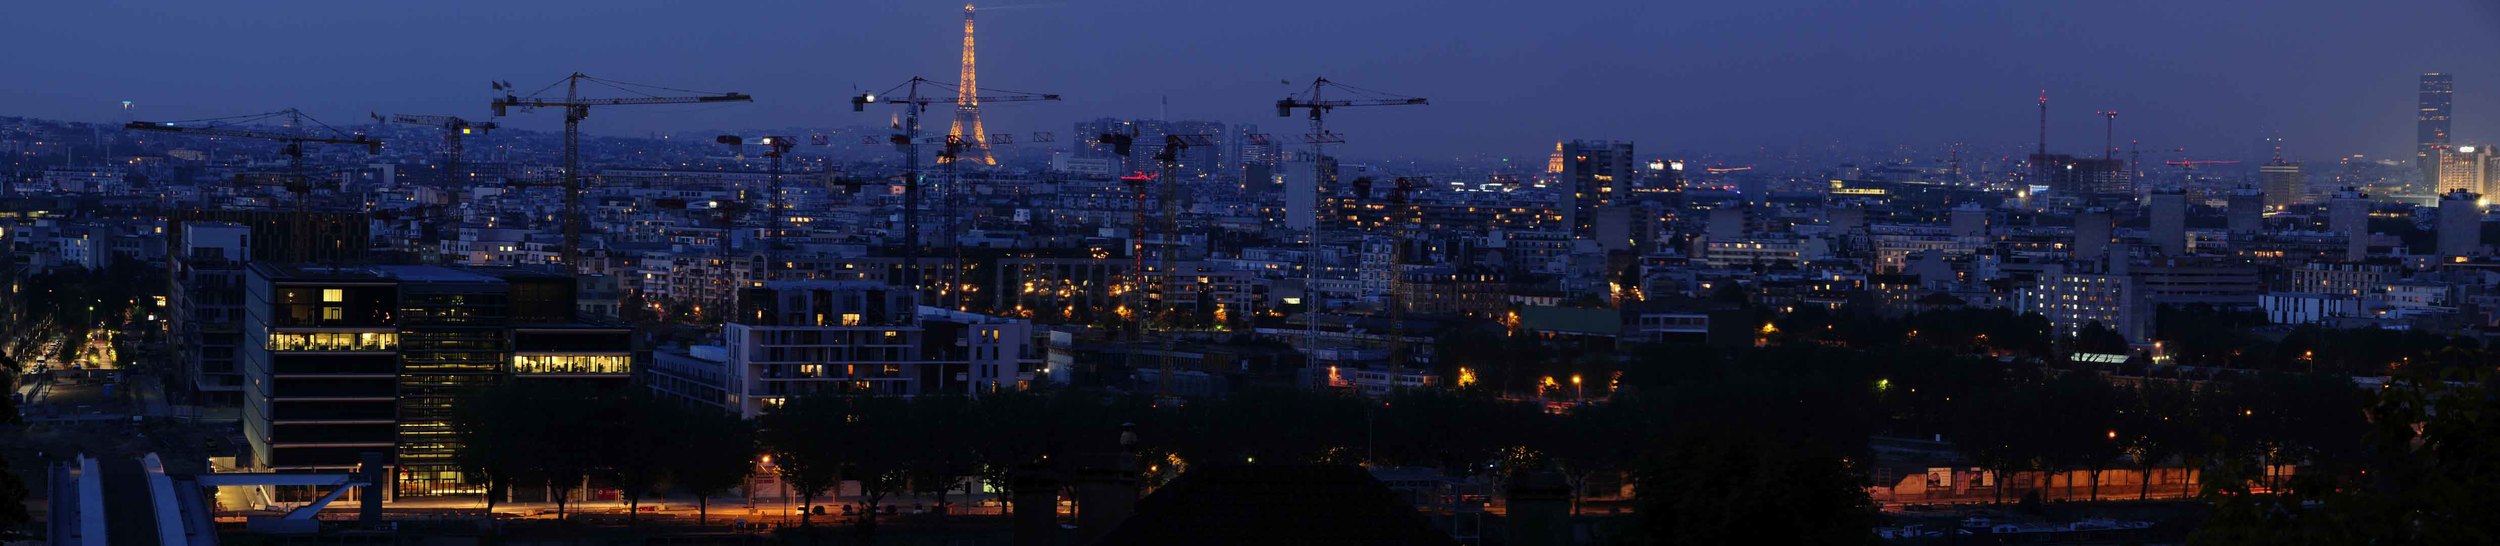 Panorama paris france grue crane skyline night sunset light dark building city life.jpg